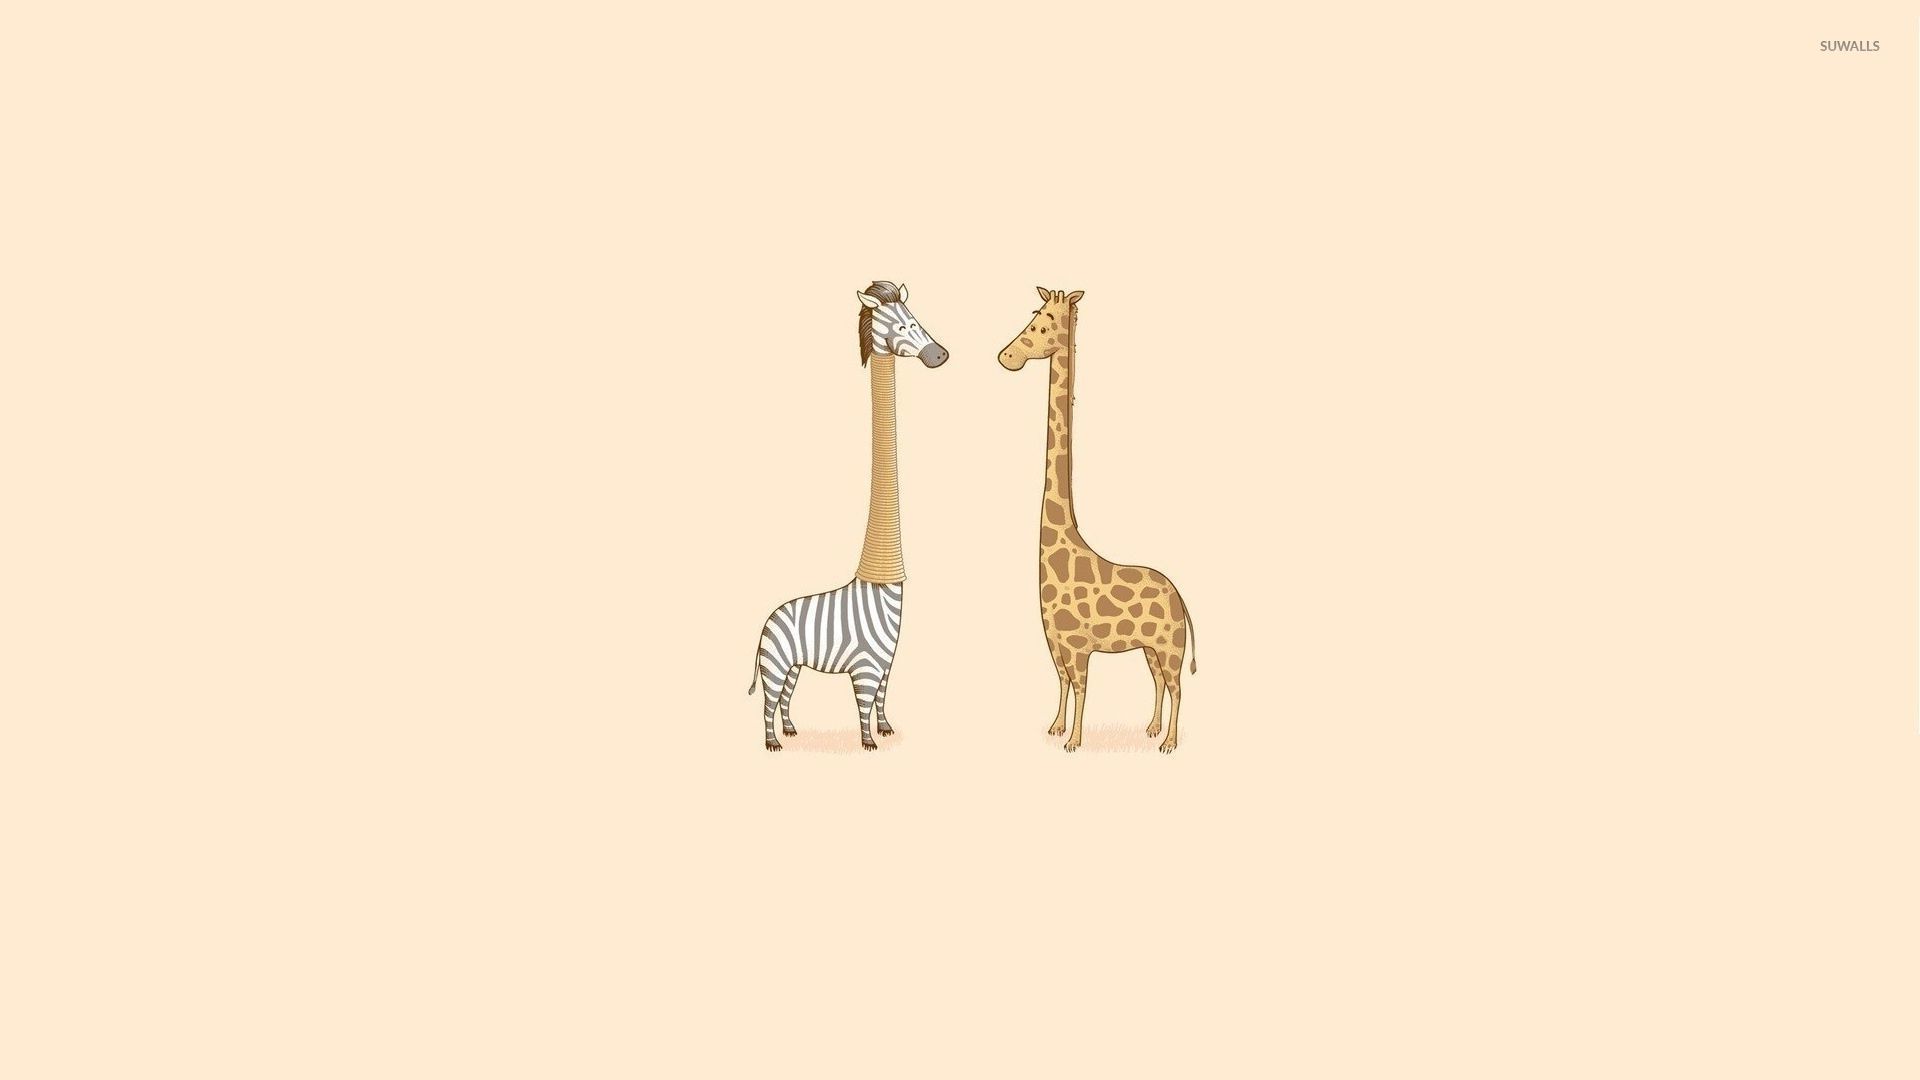 Giraffe and zebra being friends wallpaper wallpaper